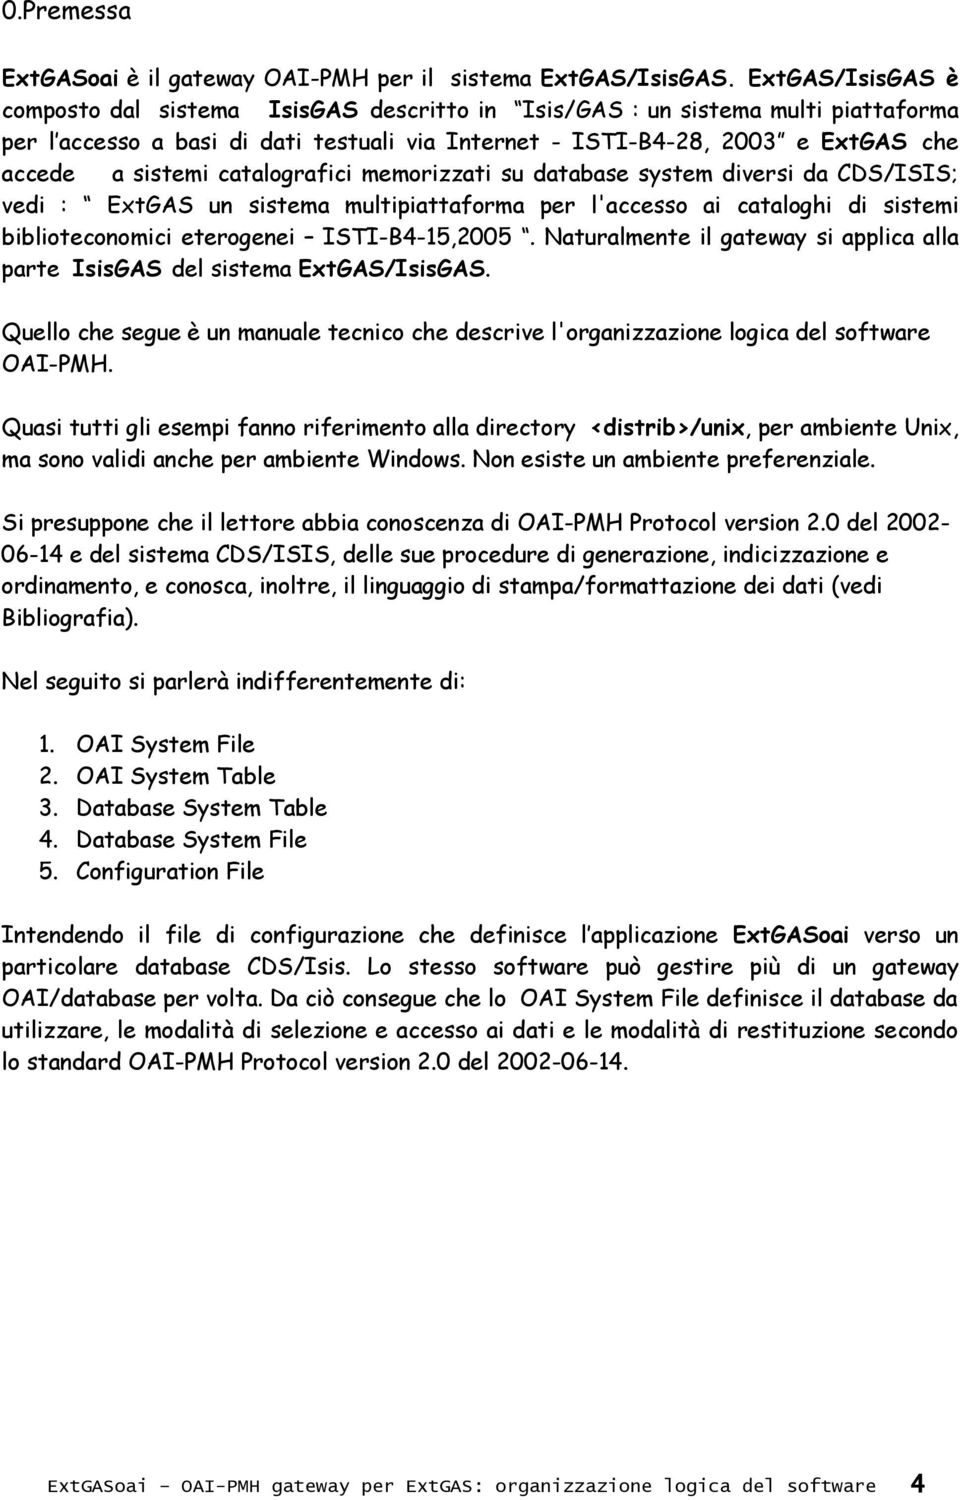 catalografici memorizzati su database system diversi da CDS/ISIS; vedi : ExtGAS un sistema multipiattaforma per l'accesso ai cataloghi di sistemi biblioteconomici eterogenei ISTI-B4-15,2005.